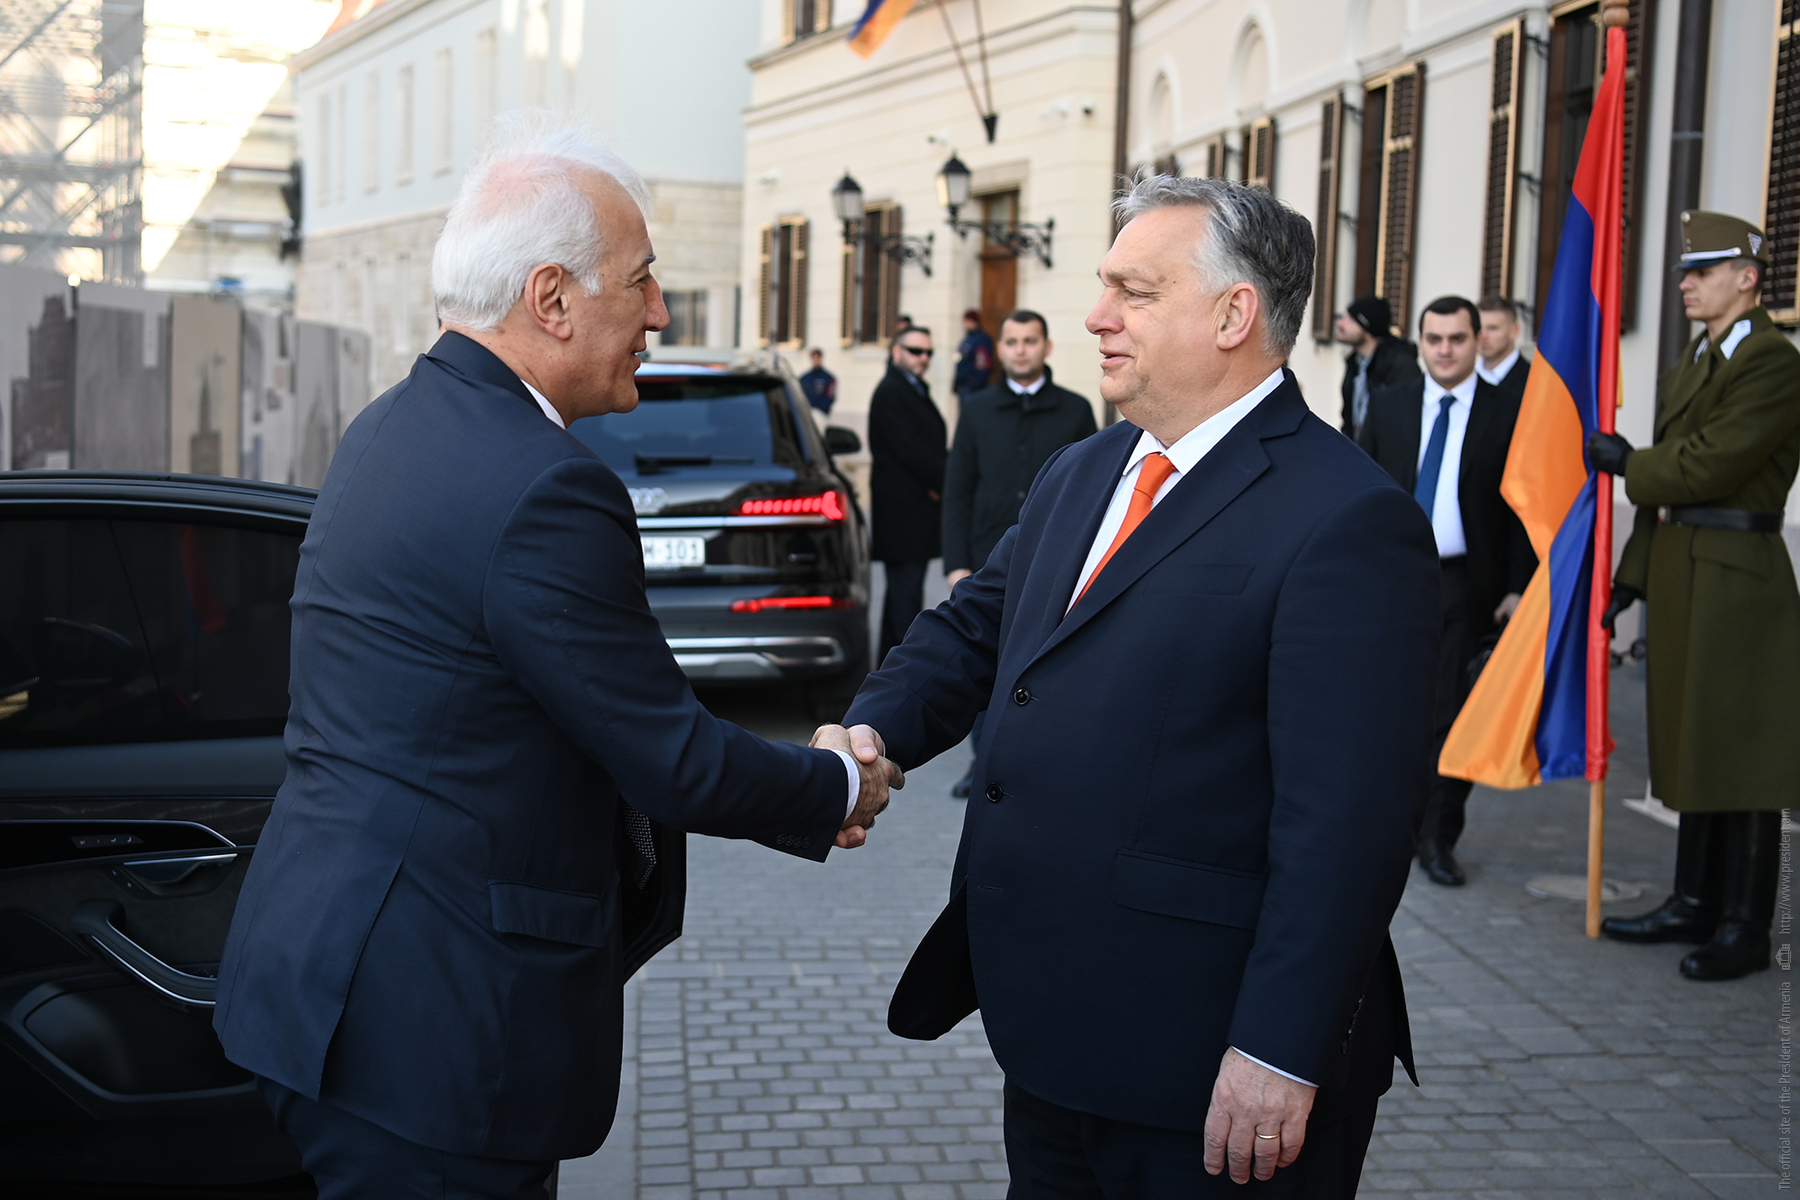 Նախագահը հանդիպում է ունեցել Հունգարիայի վարչապետ Վիկտոր Օրբանի հետ